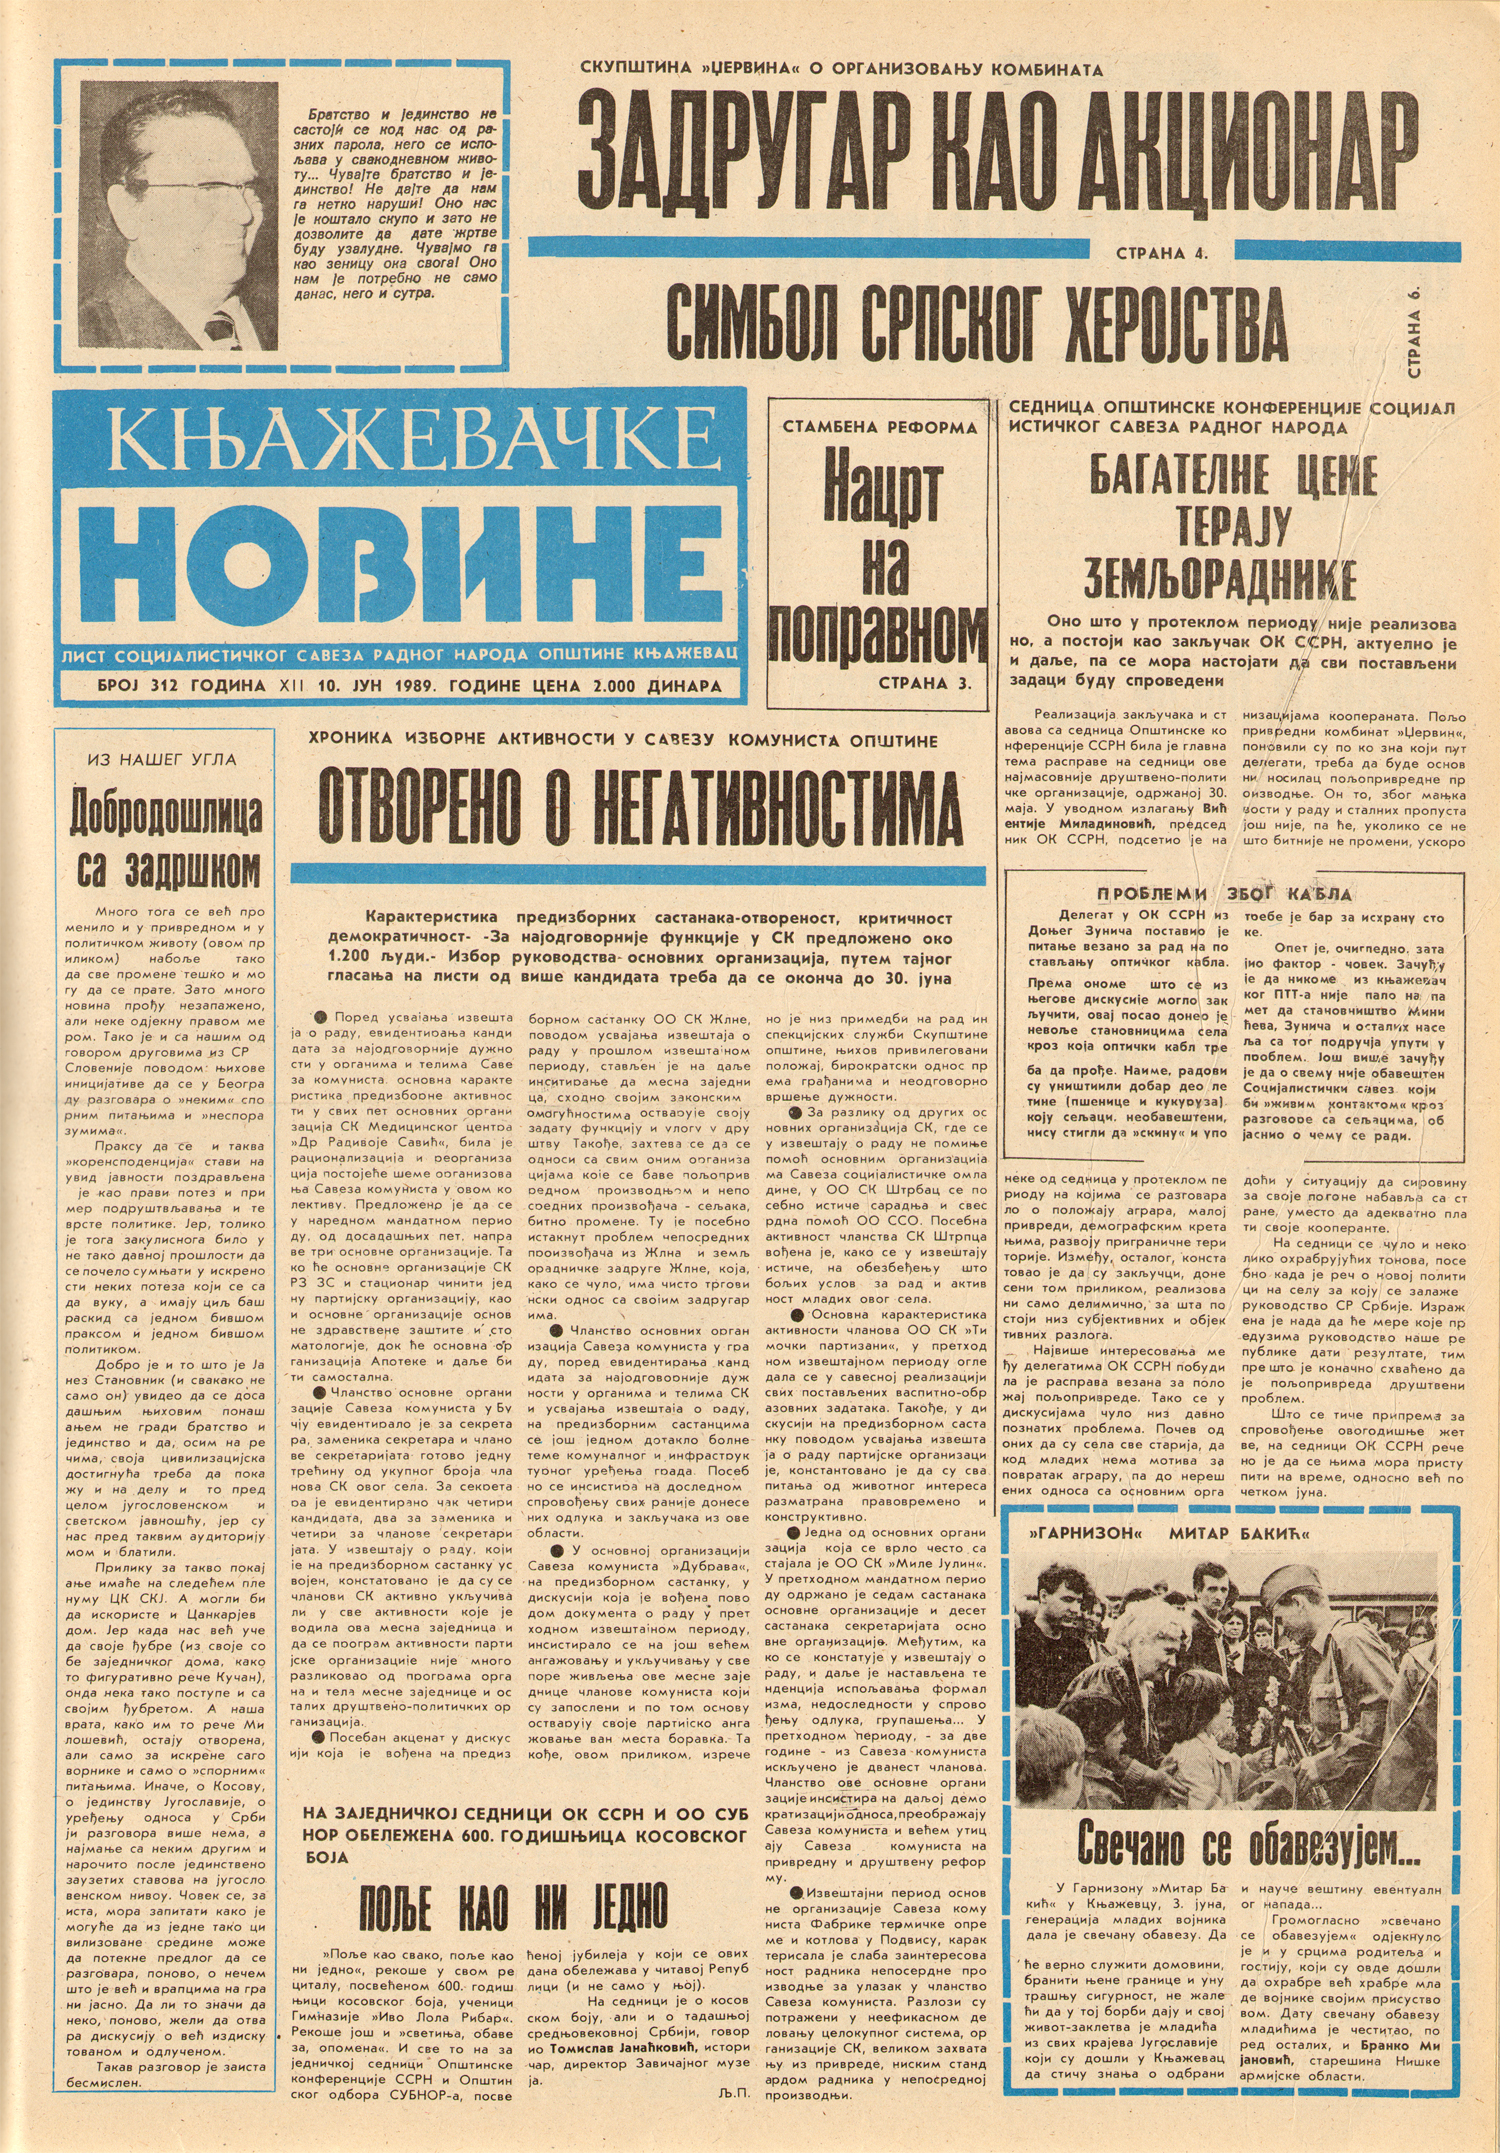 Књажевачке новине, број 312, година 1989